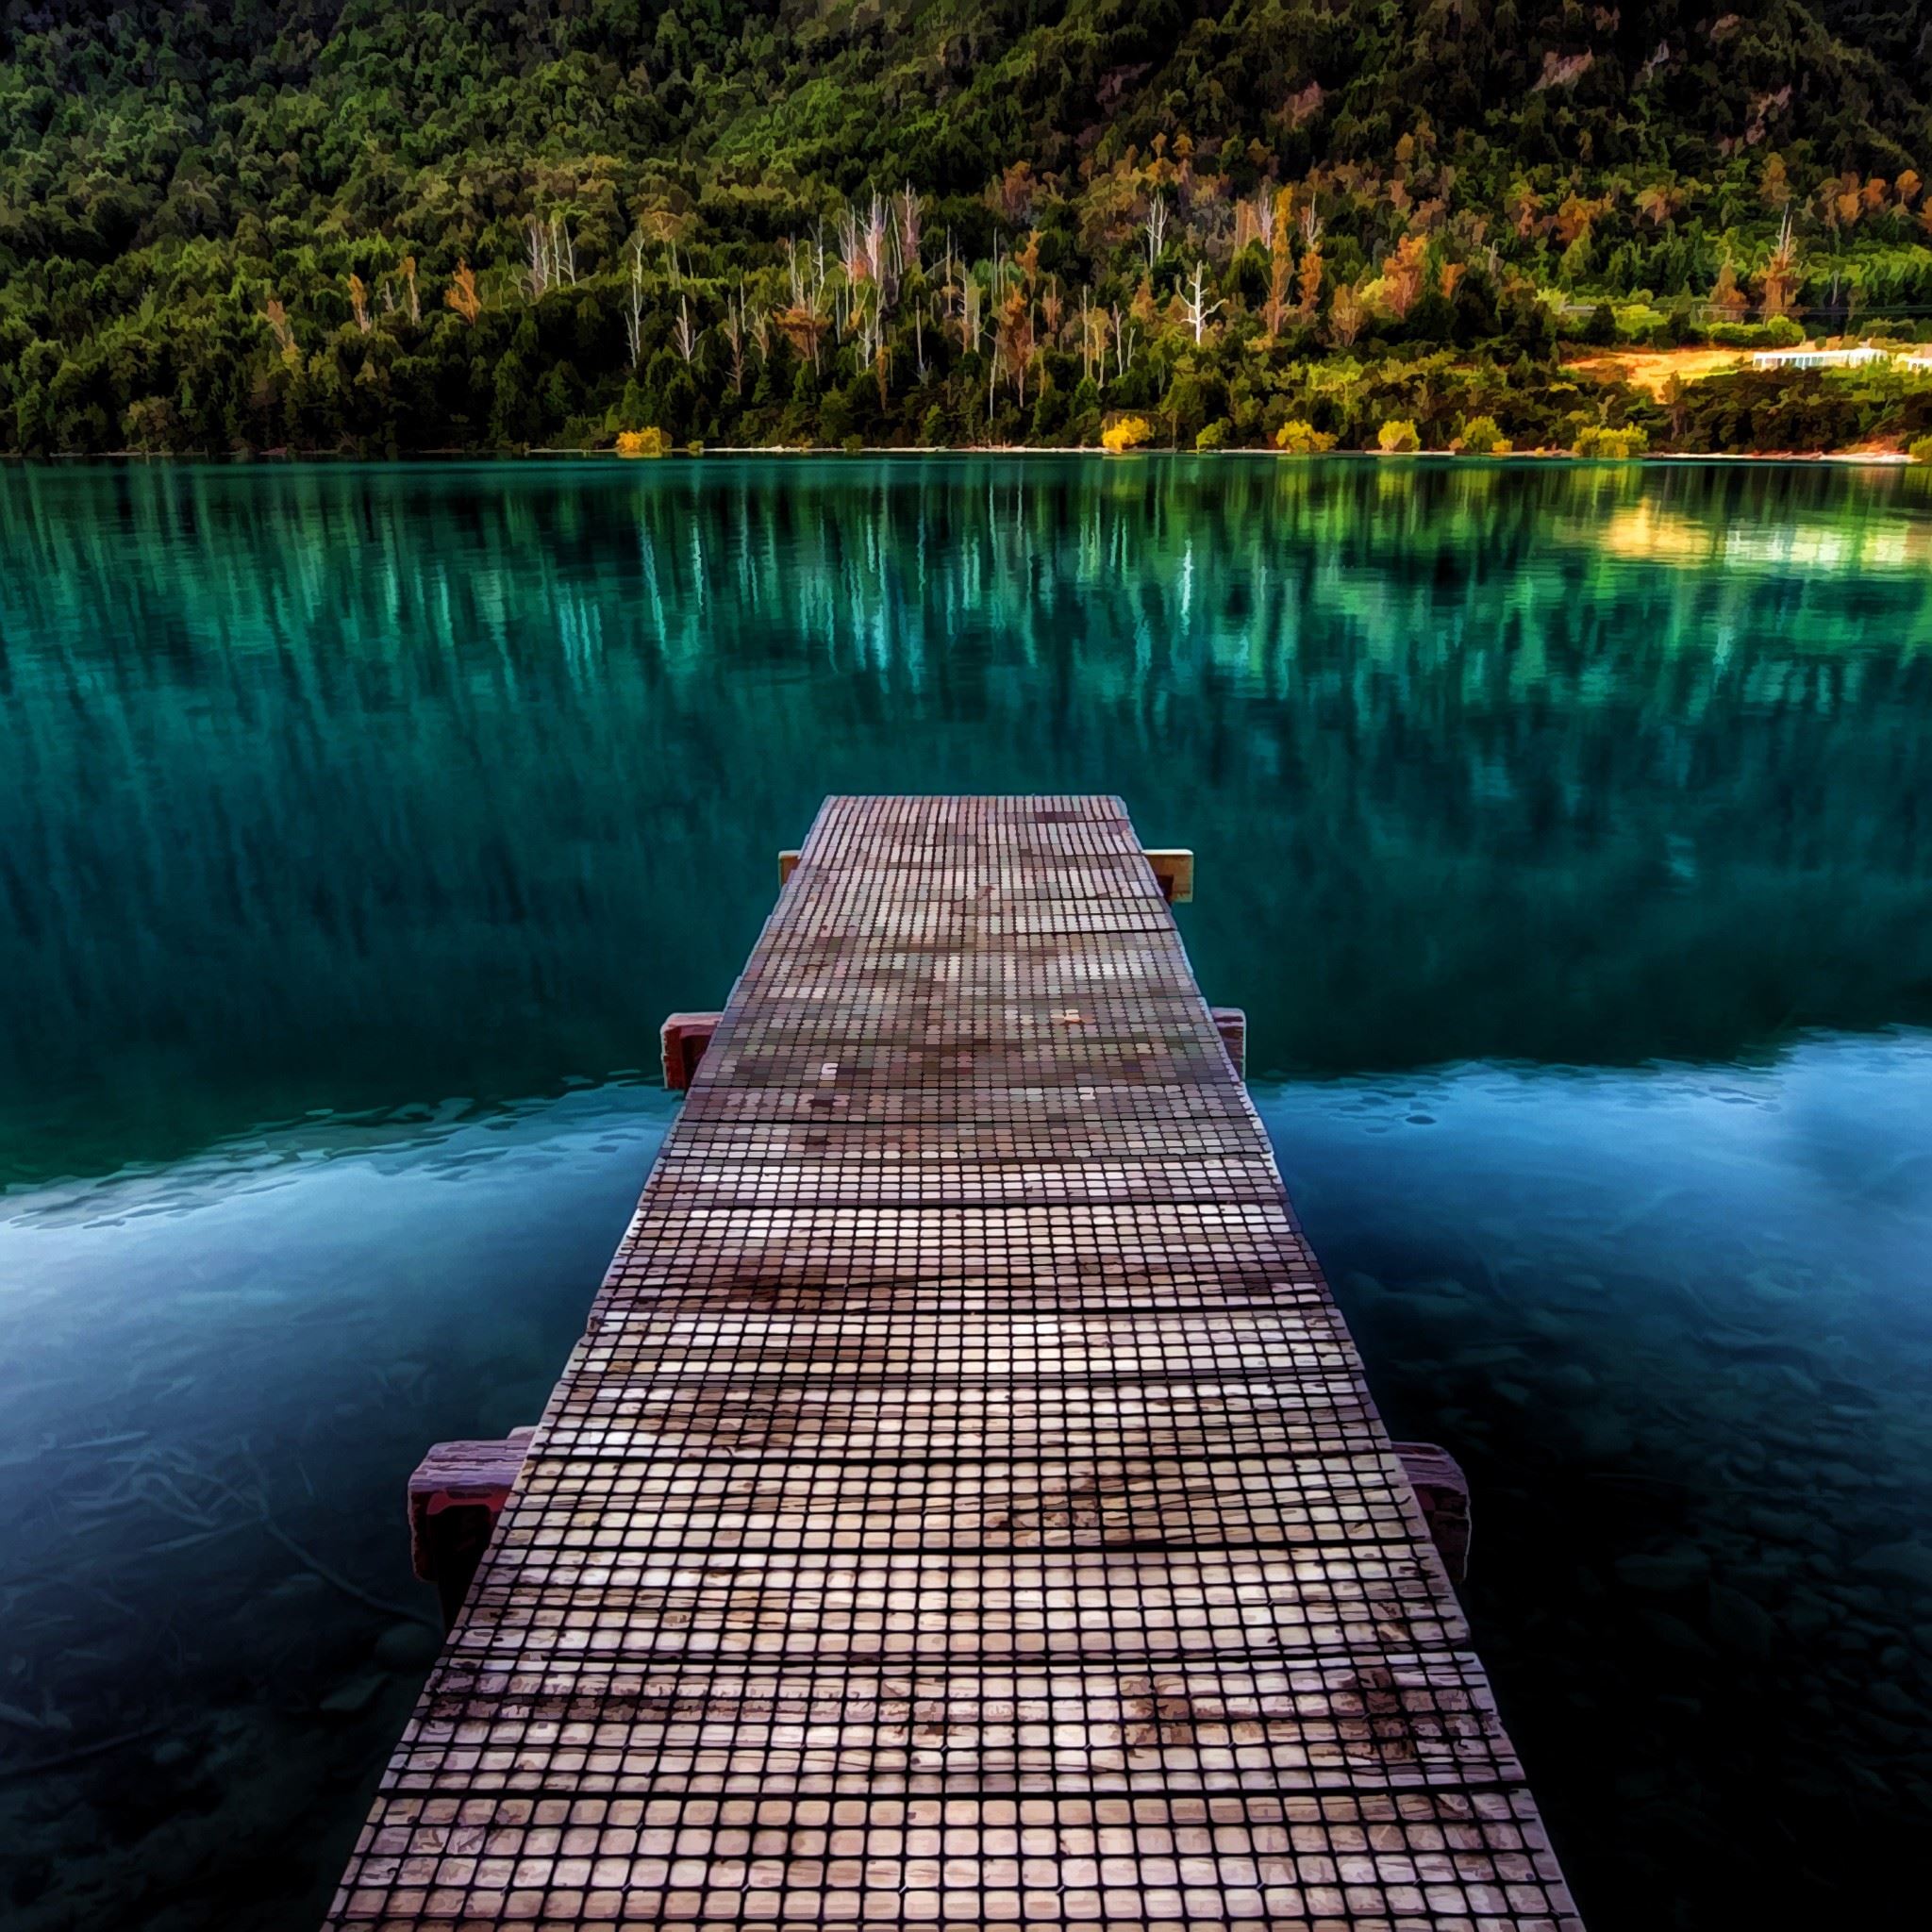 Pure Beautiful Calm Lake Wooden Bridge iPad Air Wallpaper Free Download